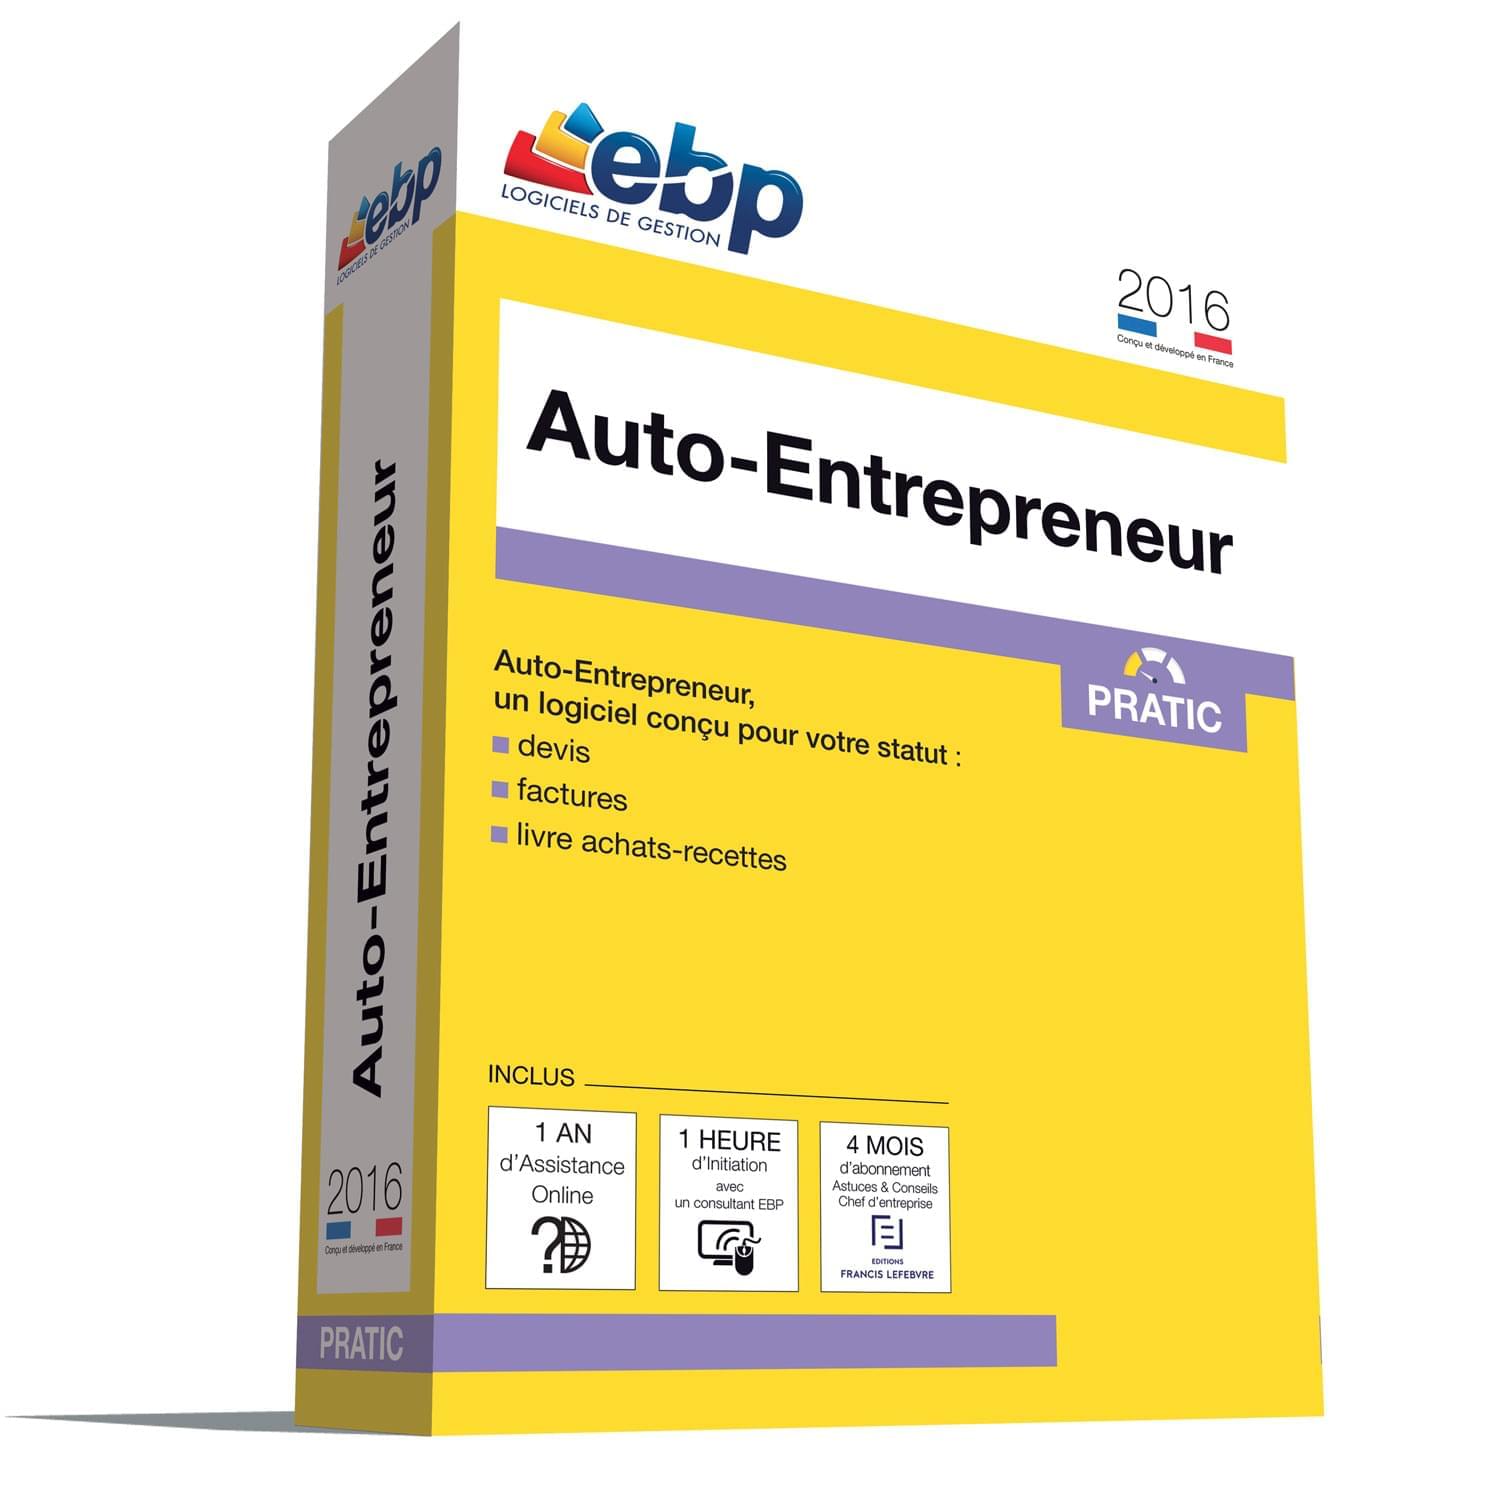 Logiciel application EBP Auto-Entrepreneur Pratic 2016 + VIP